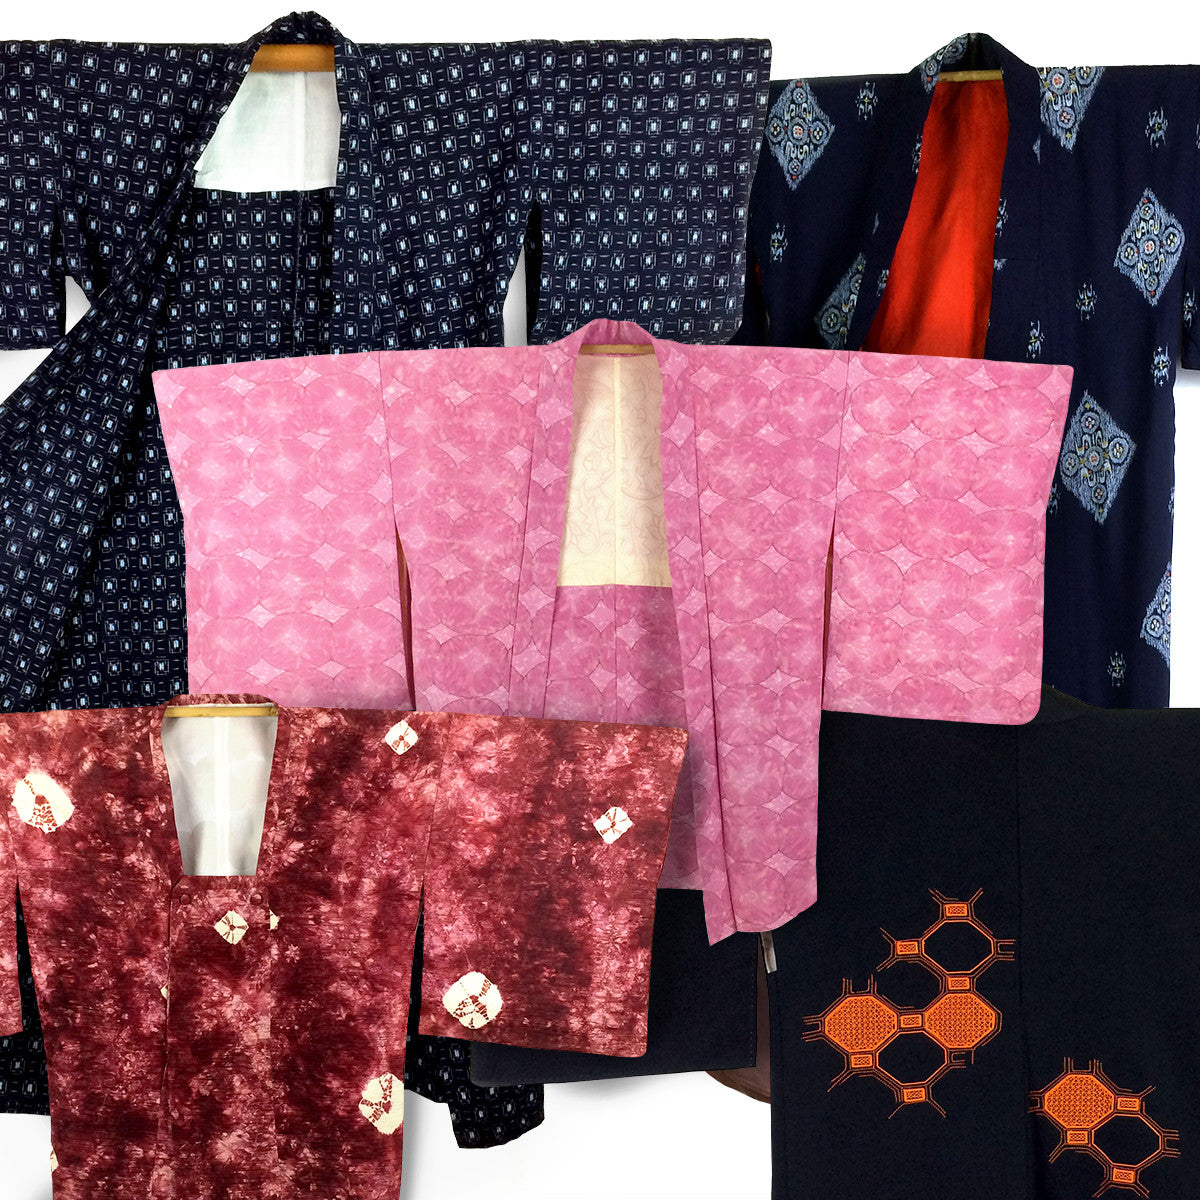 Some of our beautiful vintage kimonos